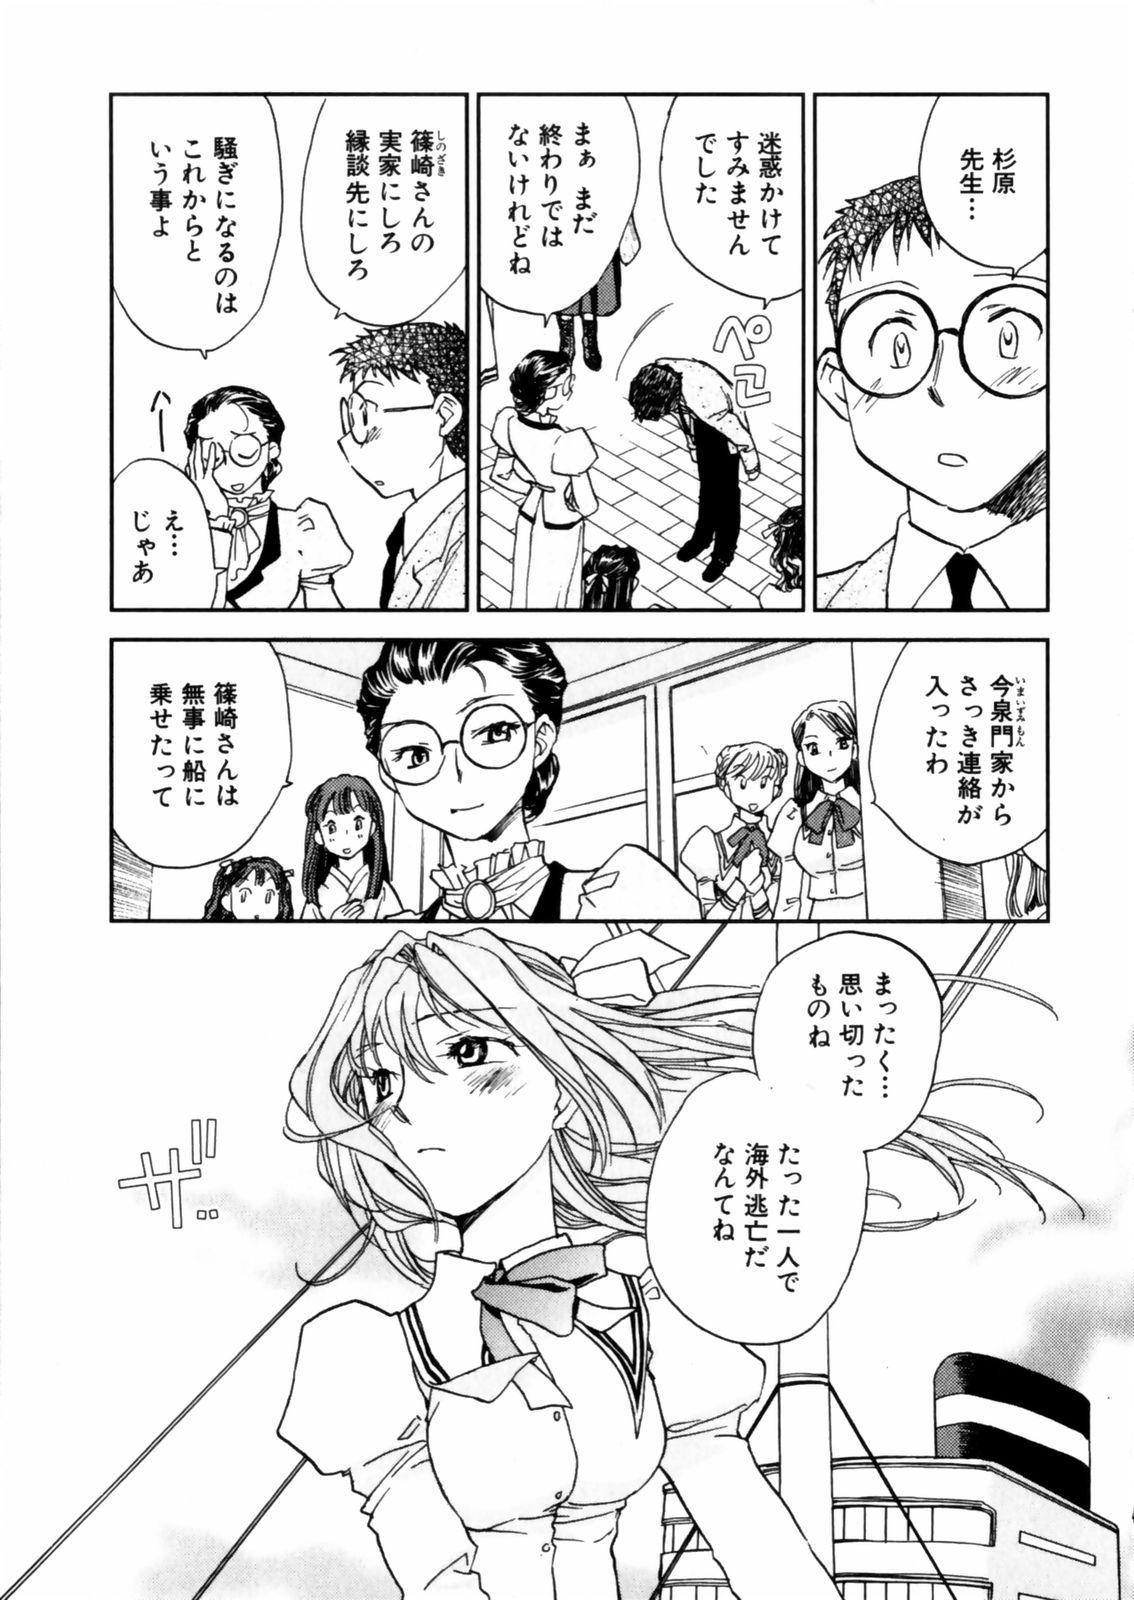 [Okano Ahiru] Hanasake ! Otome Juku (Otome Private Tutoring School) Vol.2 126